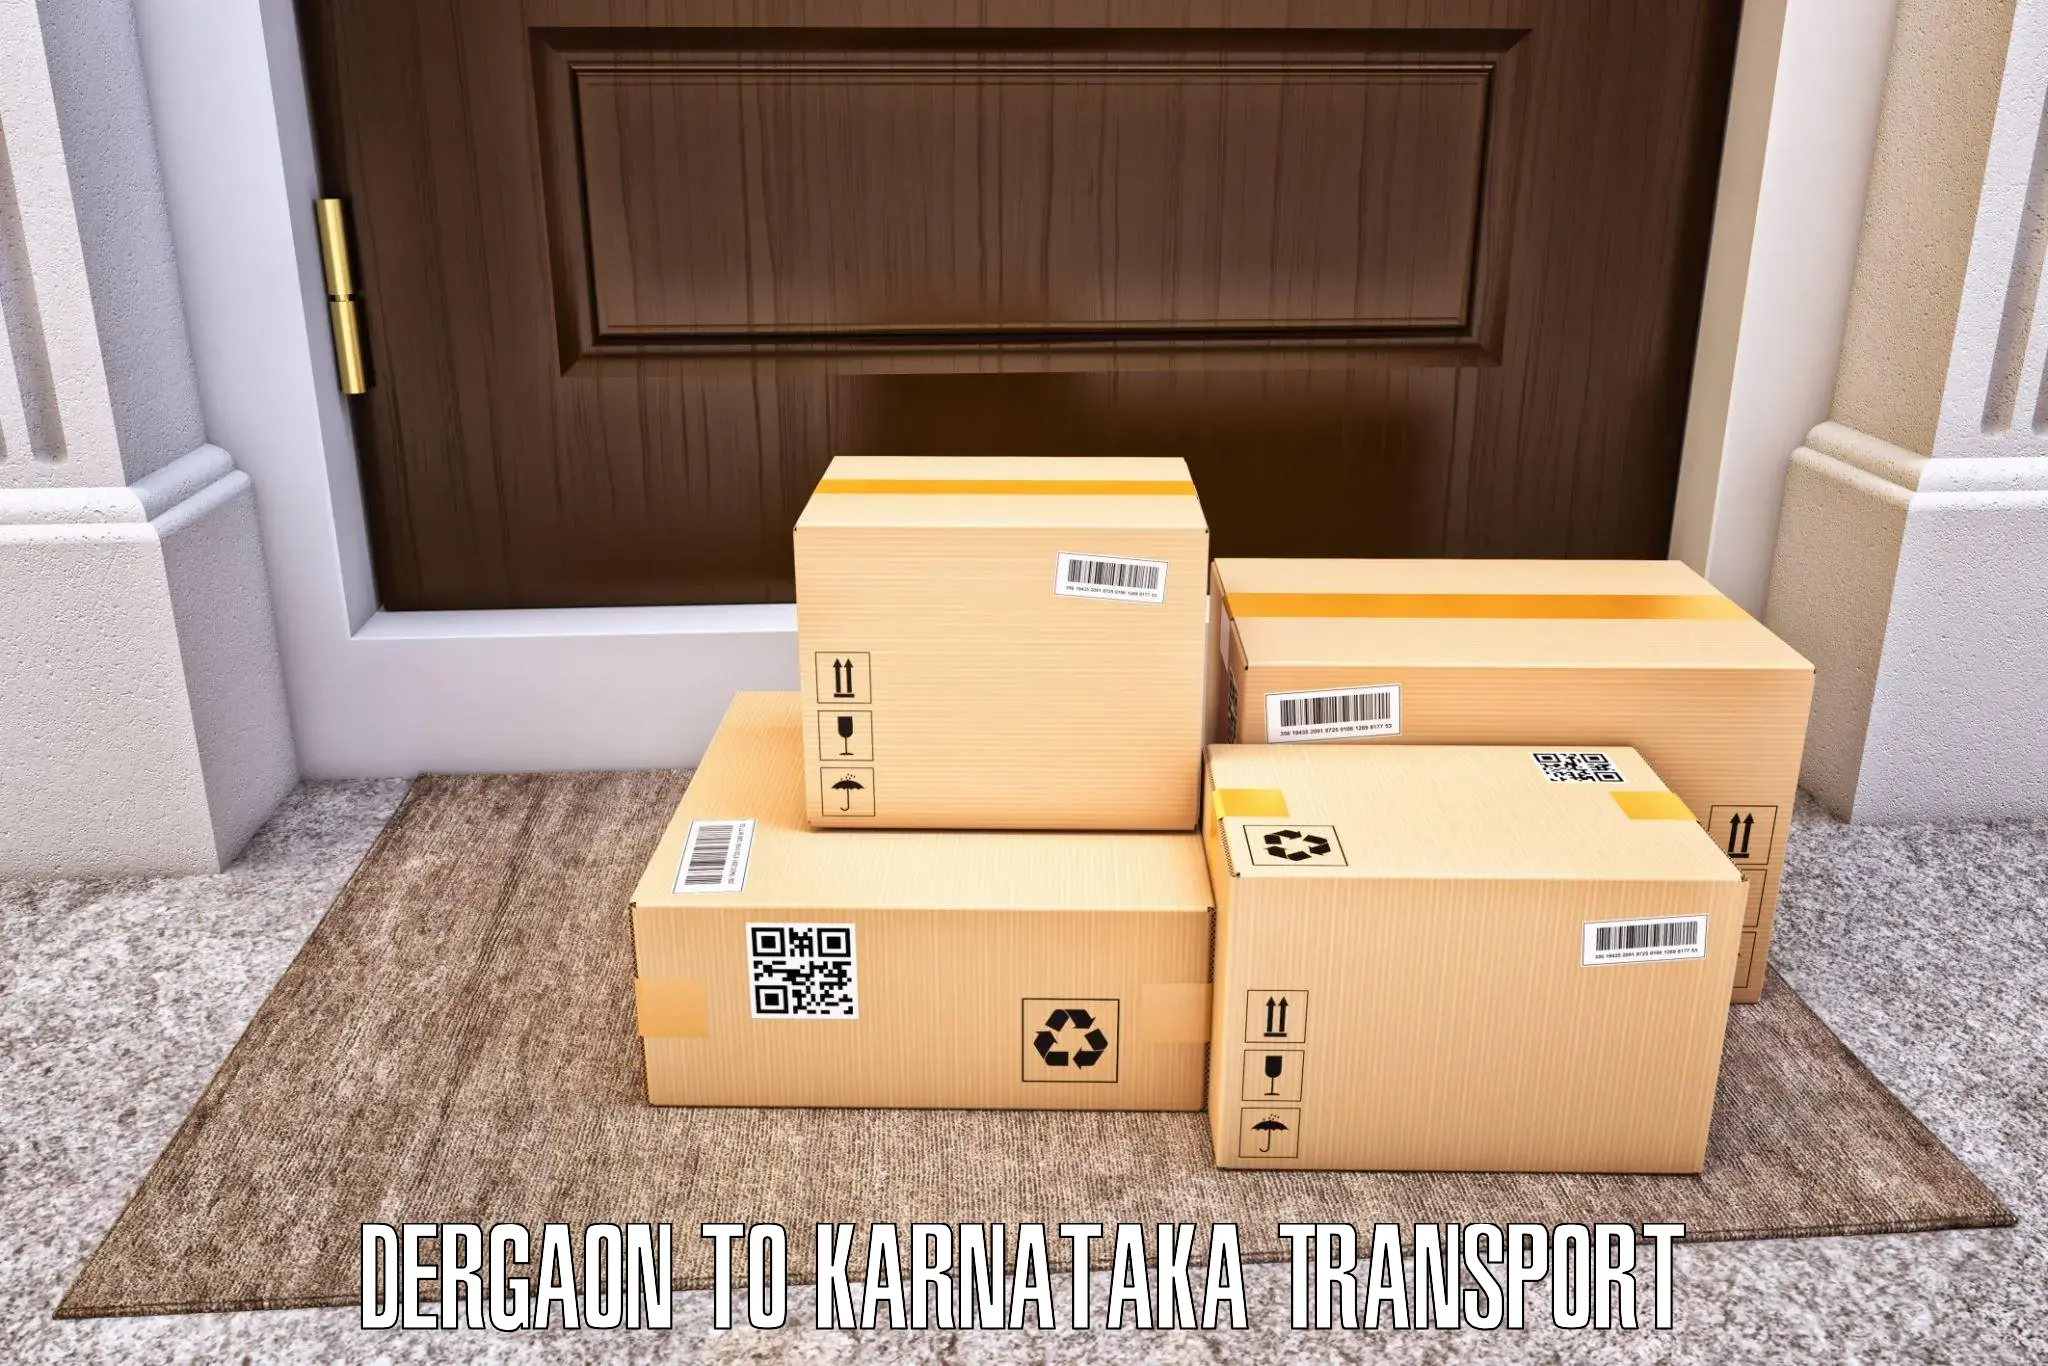 India truck logistics services Dergaon to Shorapur